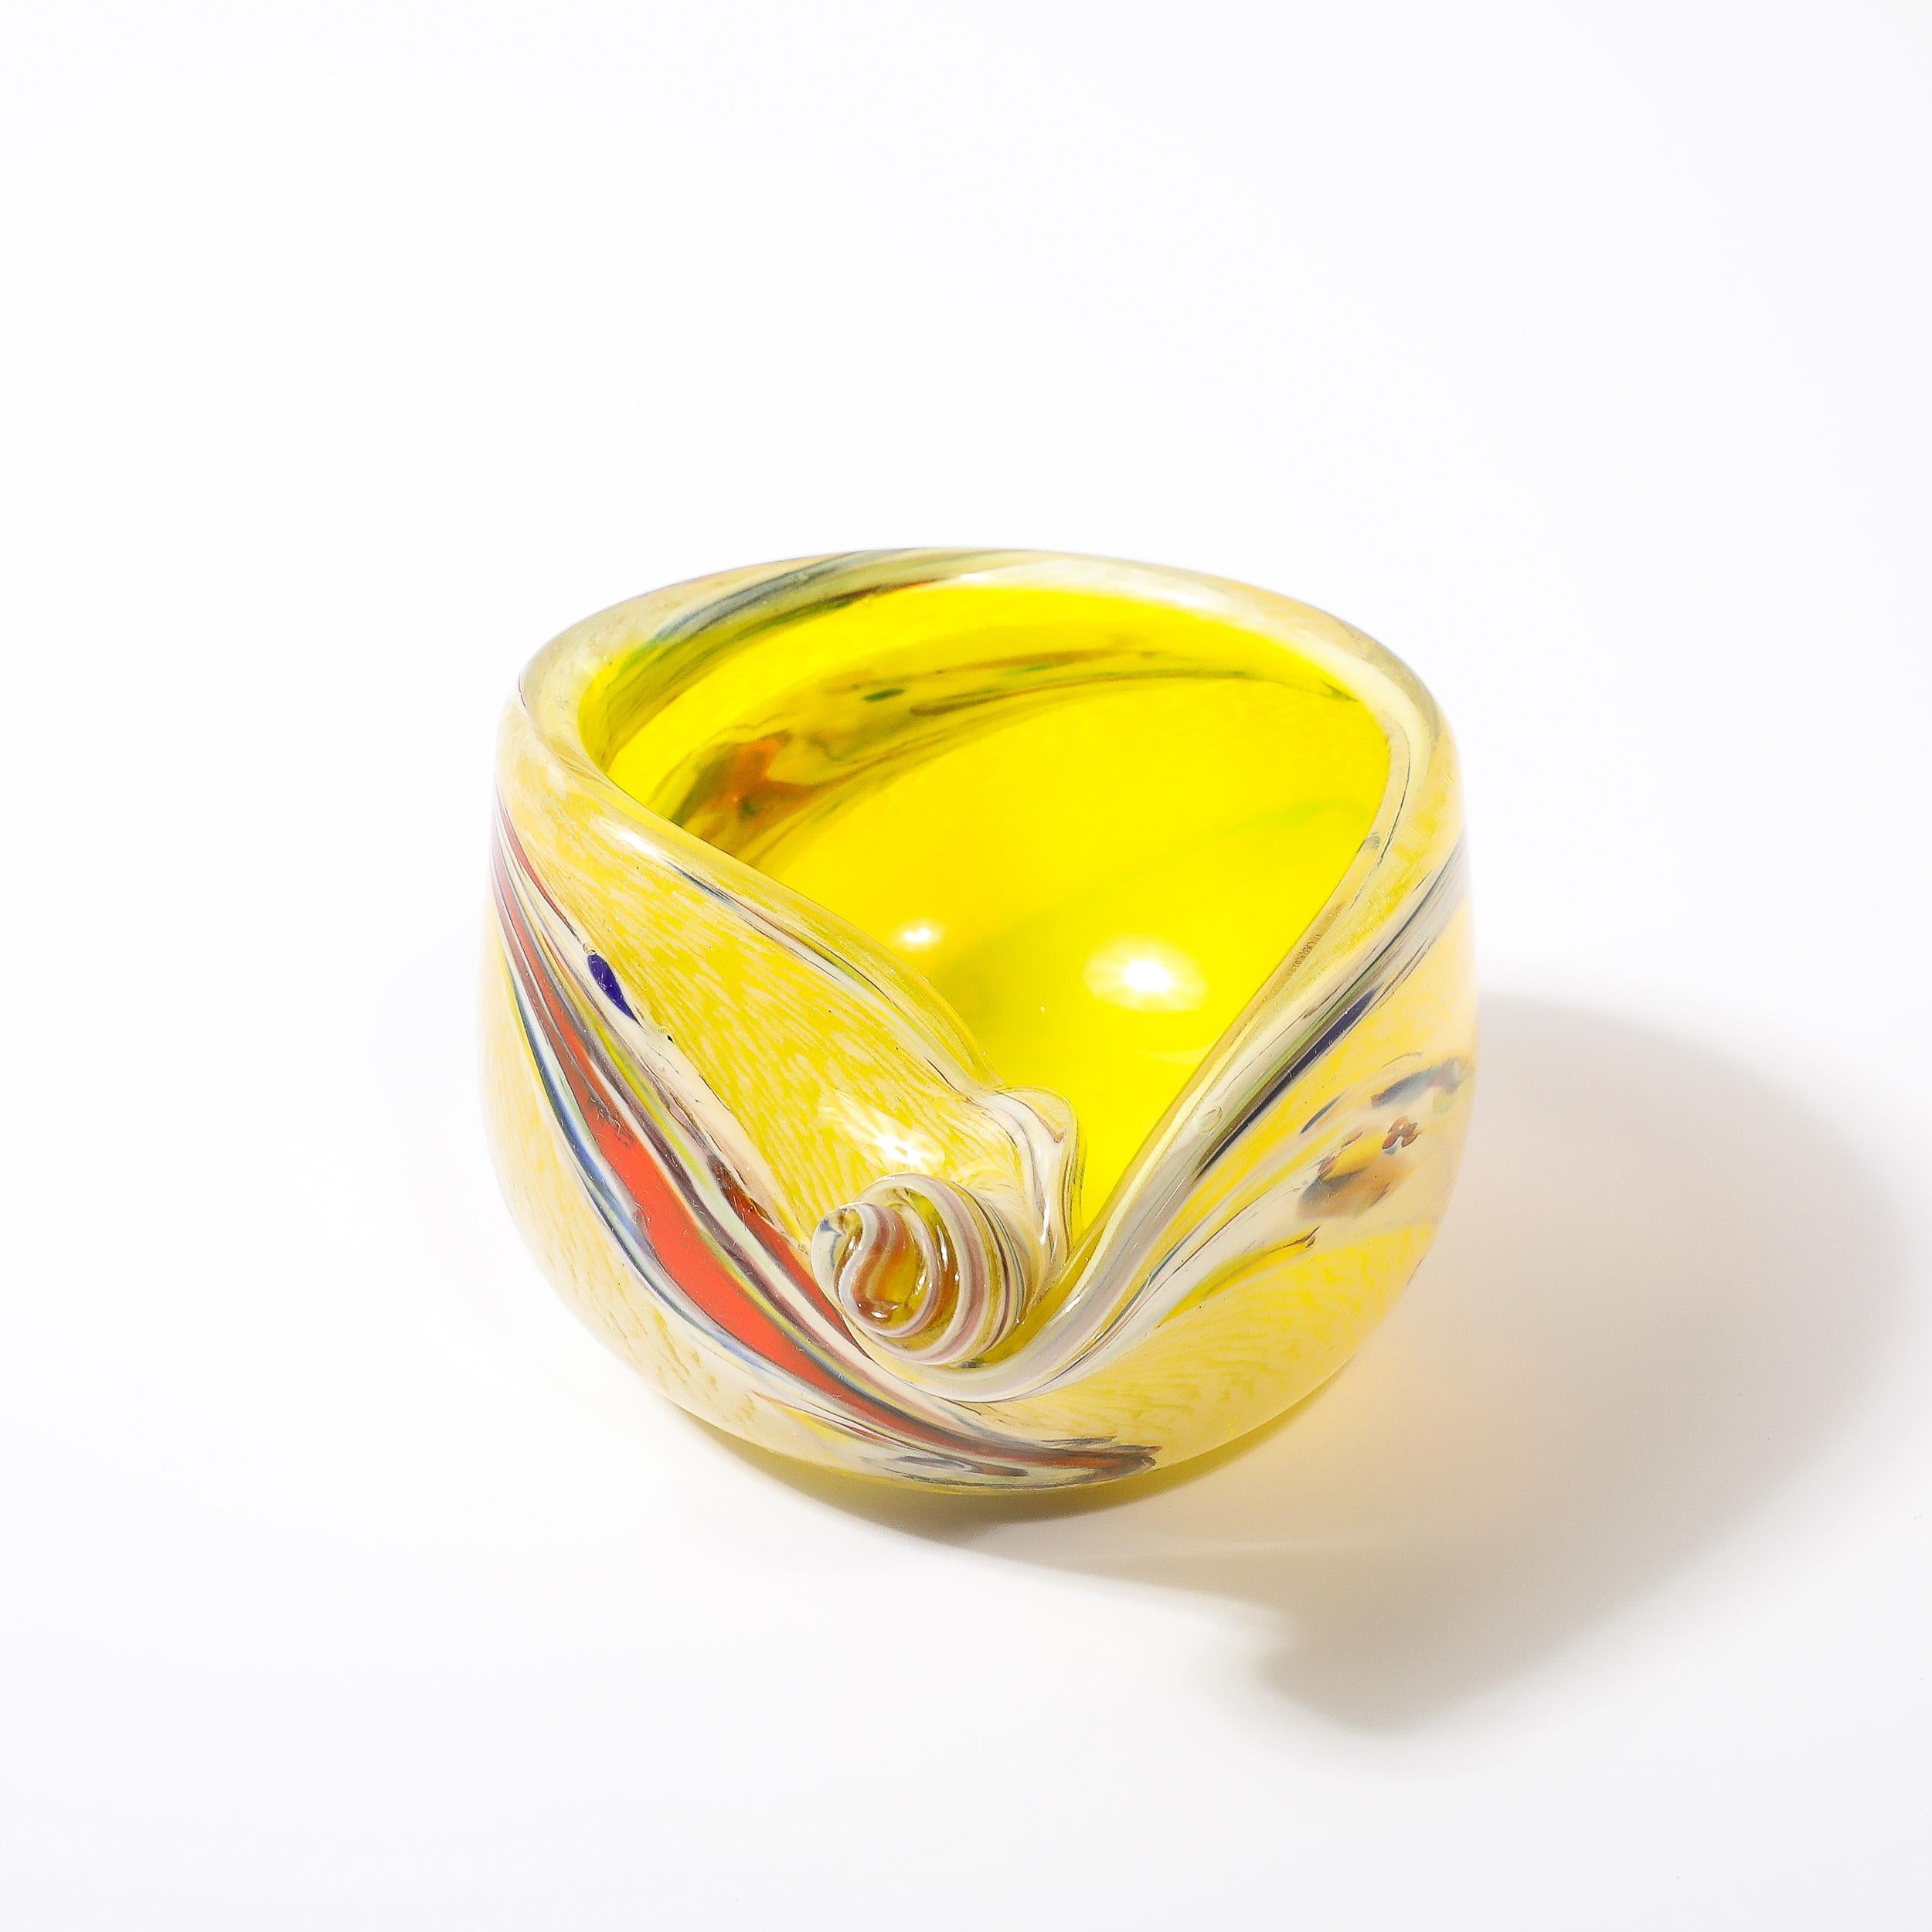 Ce bol en forme de coquillage en verre de Murano soufflé à la main, de couleur jaune citron avec des détails striés, est originaire d'Italie et date de 1960. A.Profiles est doté d'une forme de coquille avec un détail de torsion asymétrique en